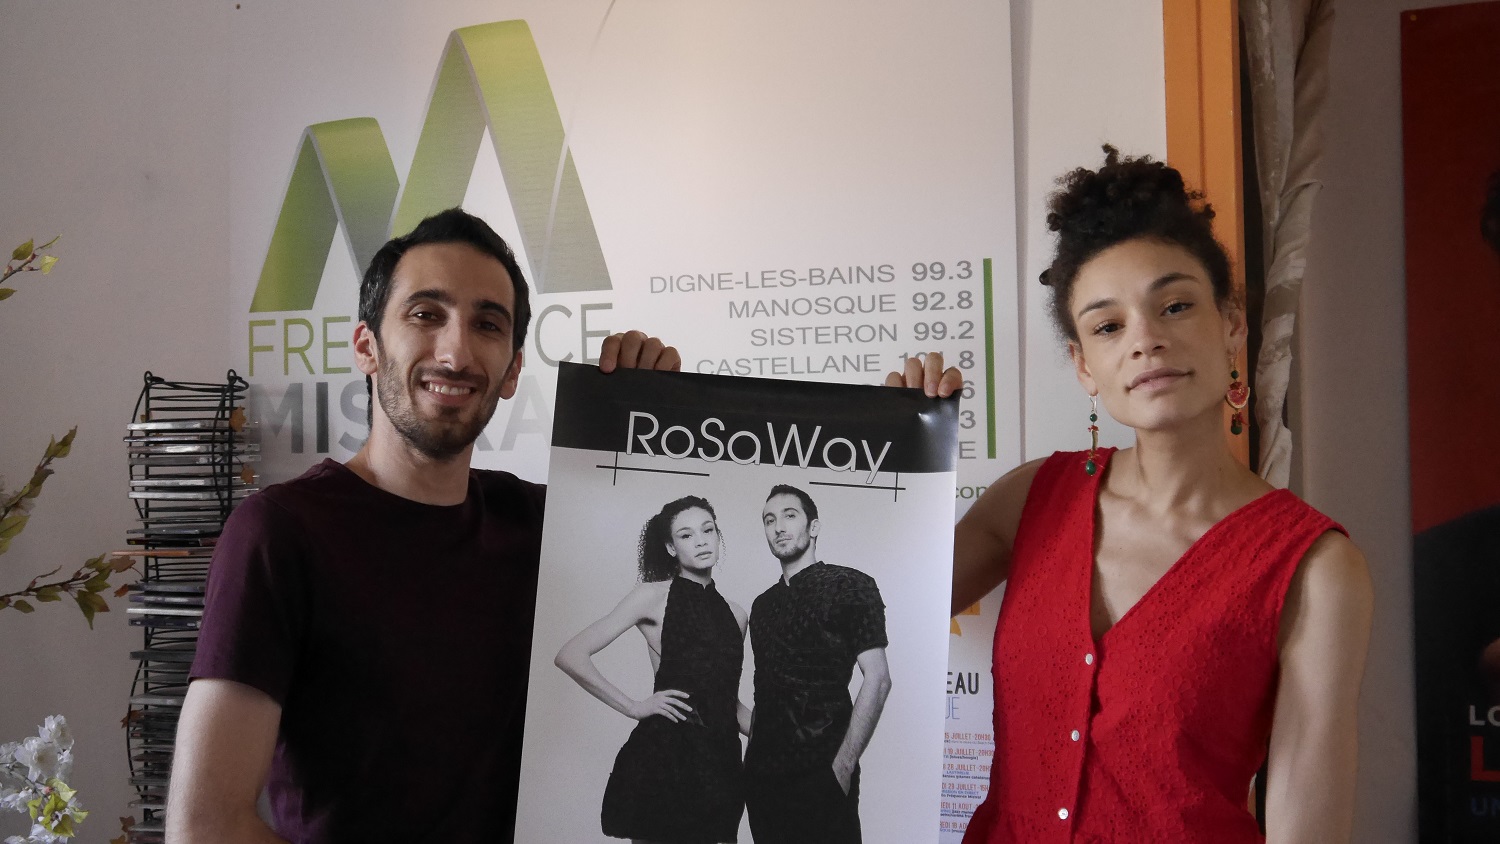 Le duo RoSaWay a fait une halte dans notre studio à Digne